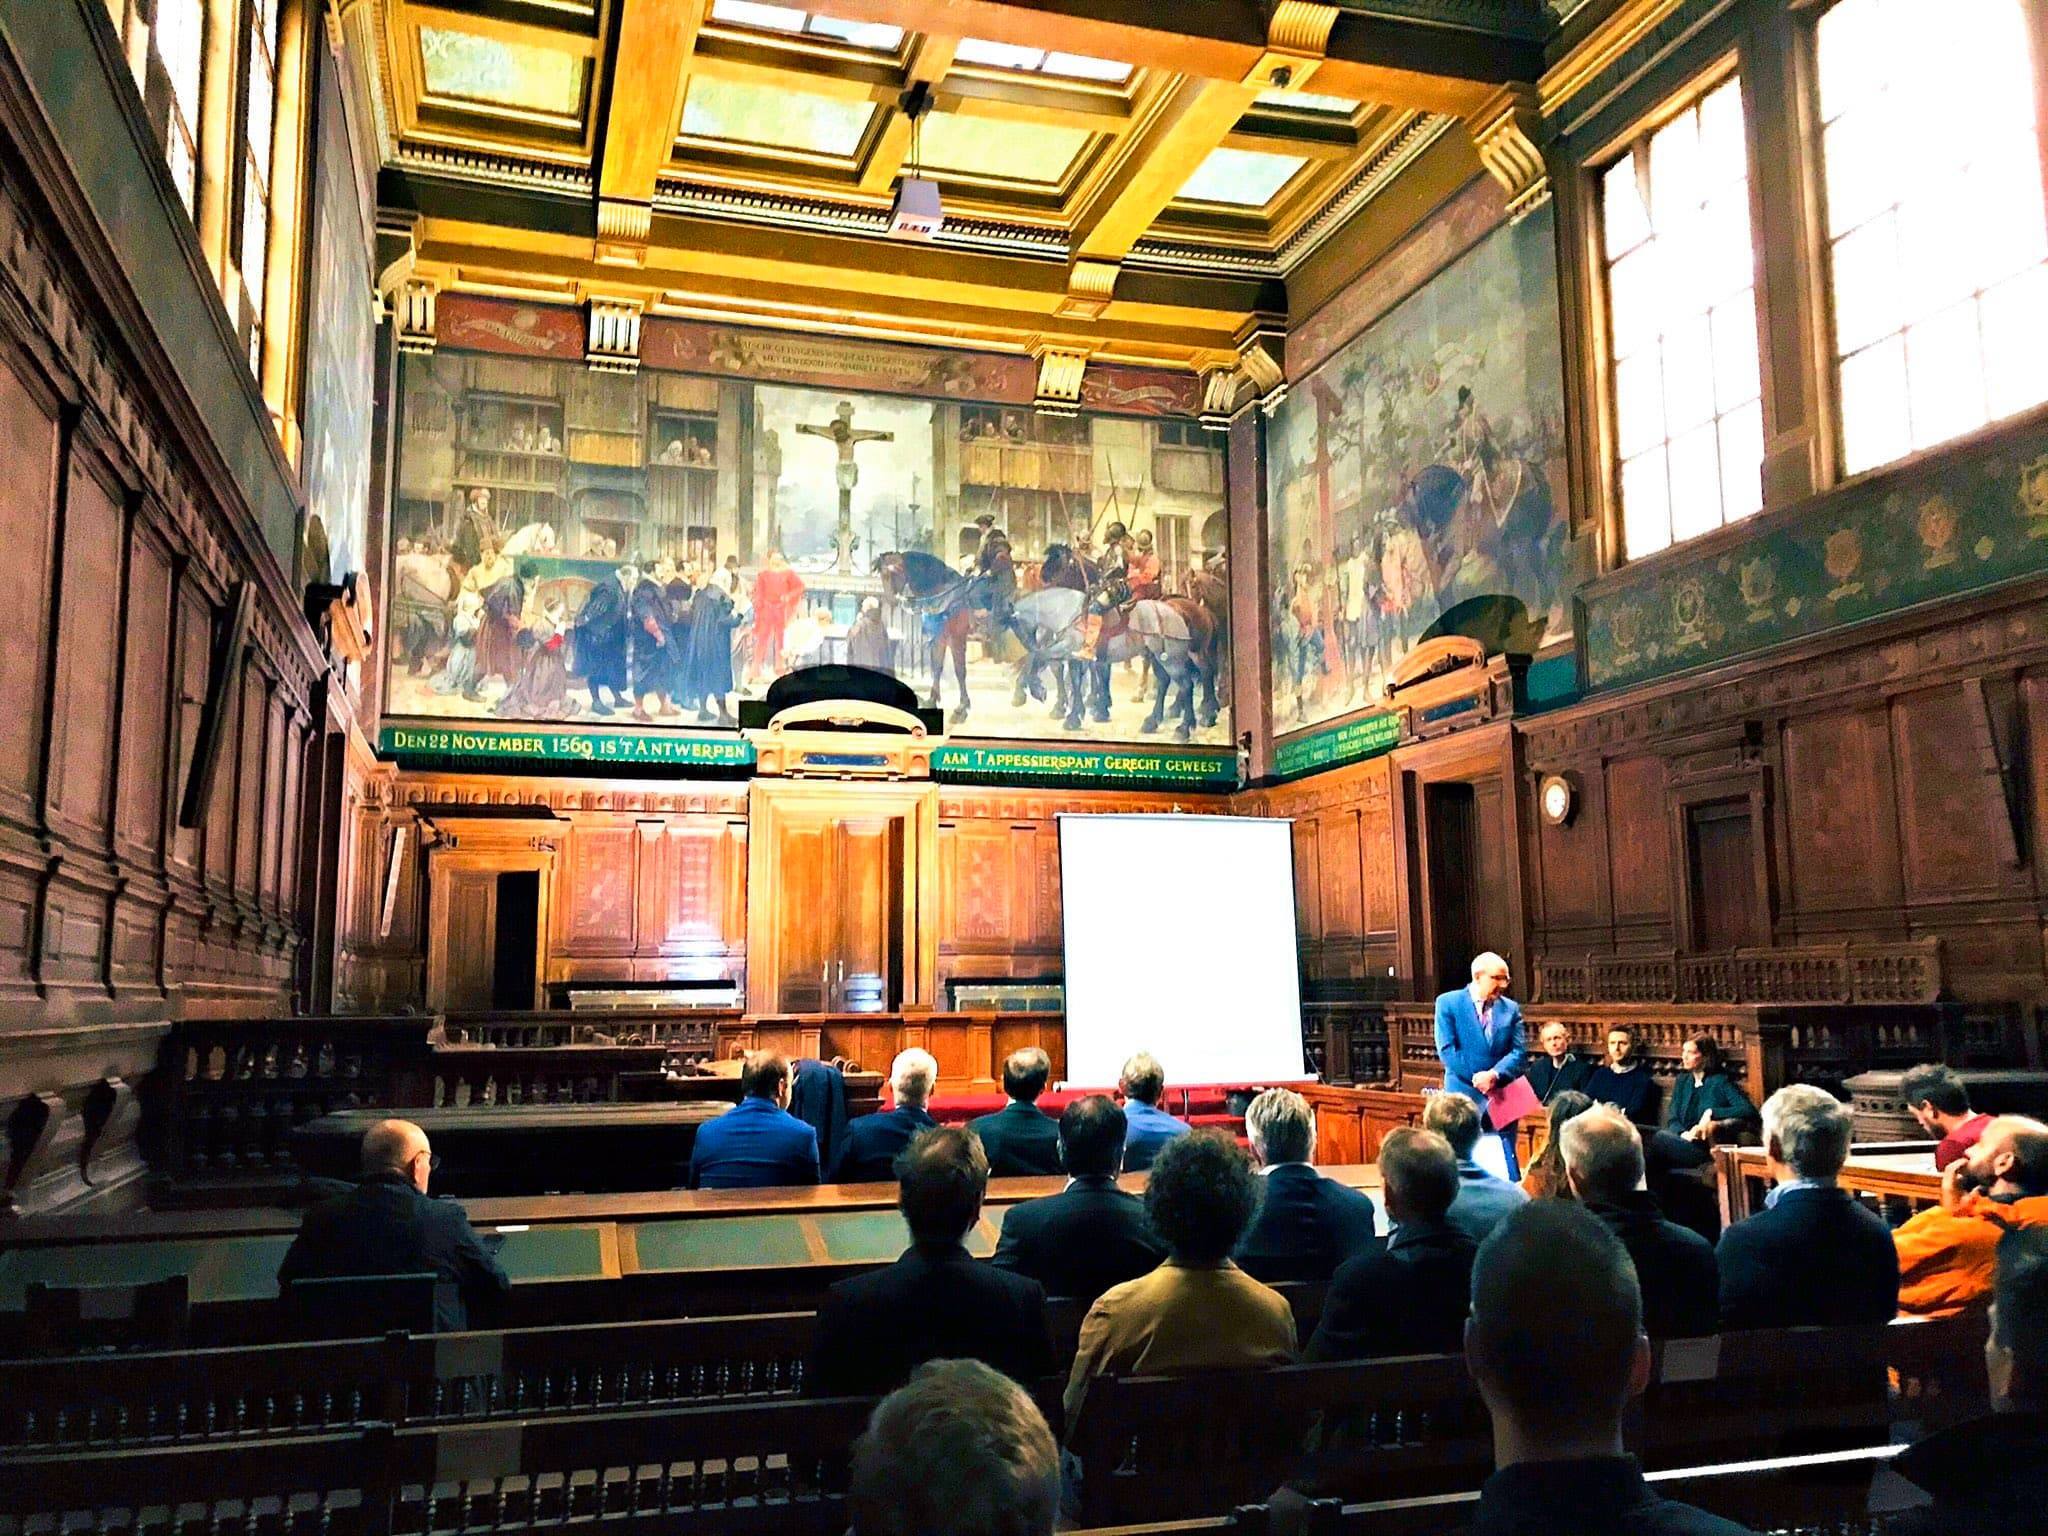 Les travaux de restauration et de rénovation du palais de justice sis Britselei à Anvers débuteront en novembre 2019